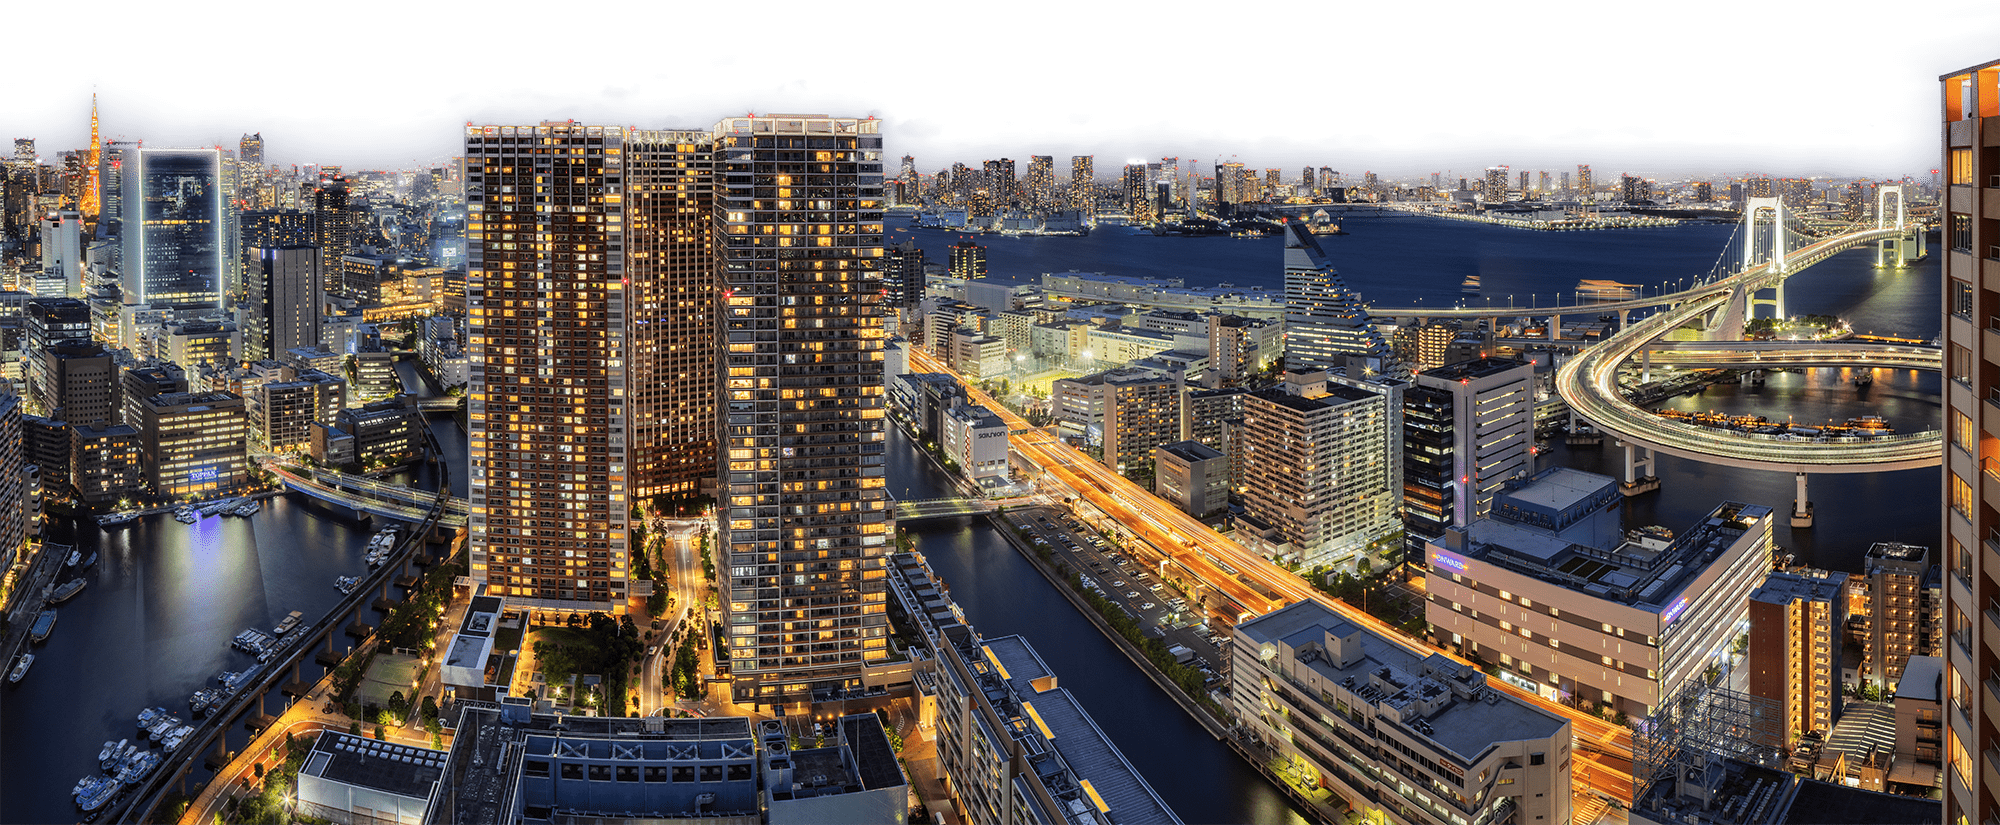 東京臨海副都心の夜景